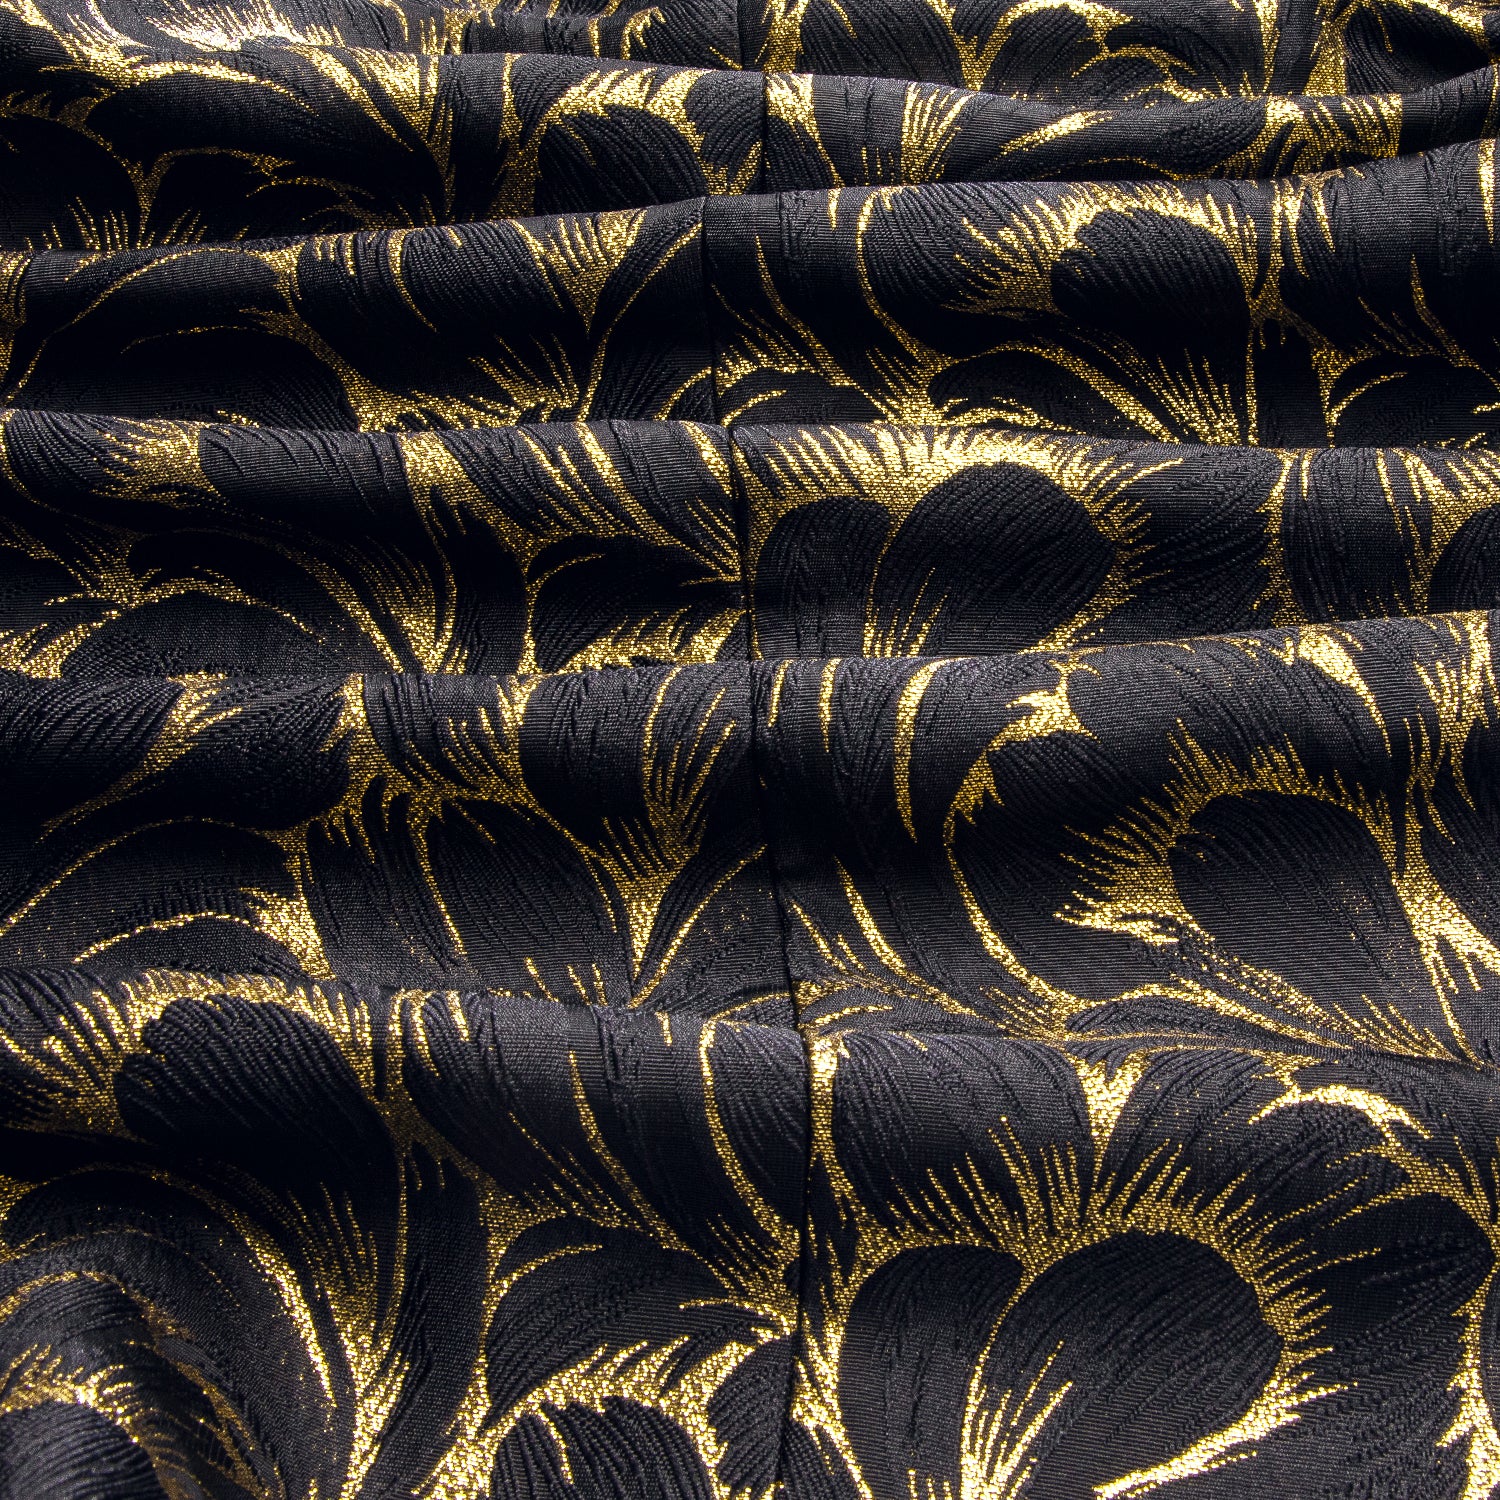 Luxury Black Gold Feather Men's Suit Set